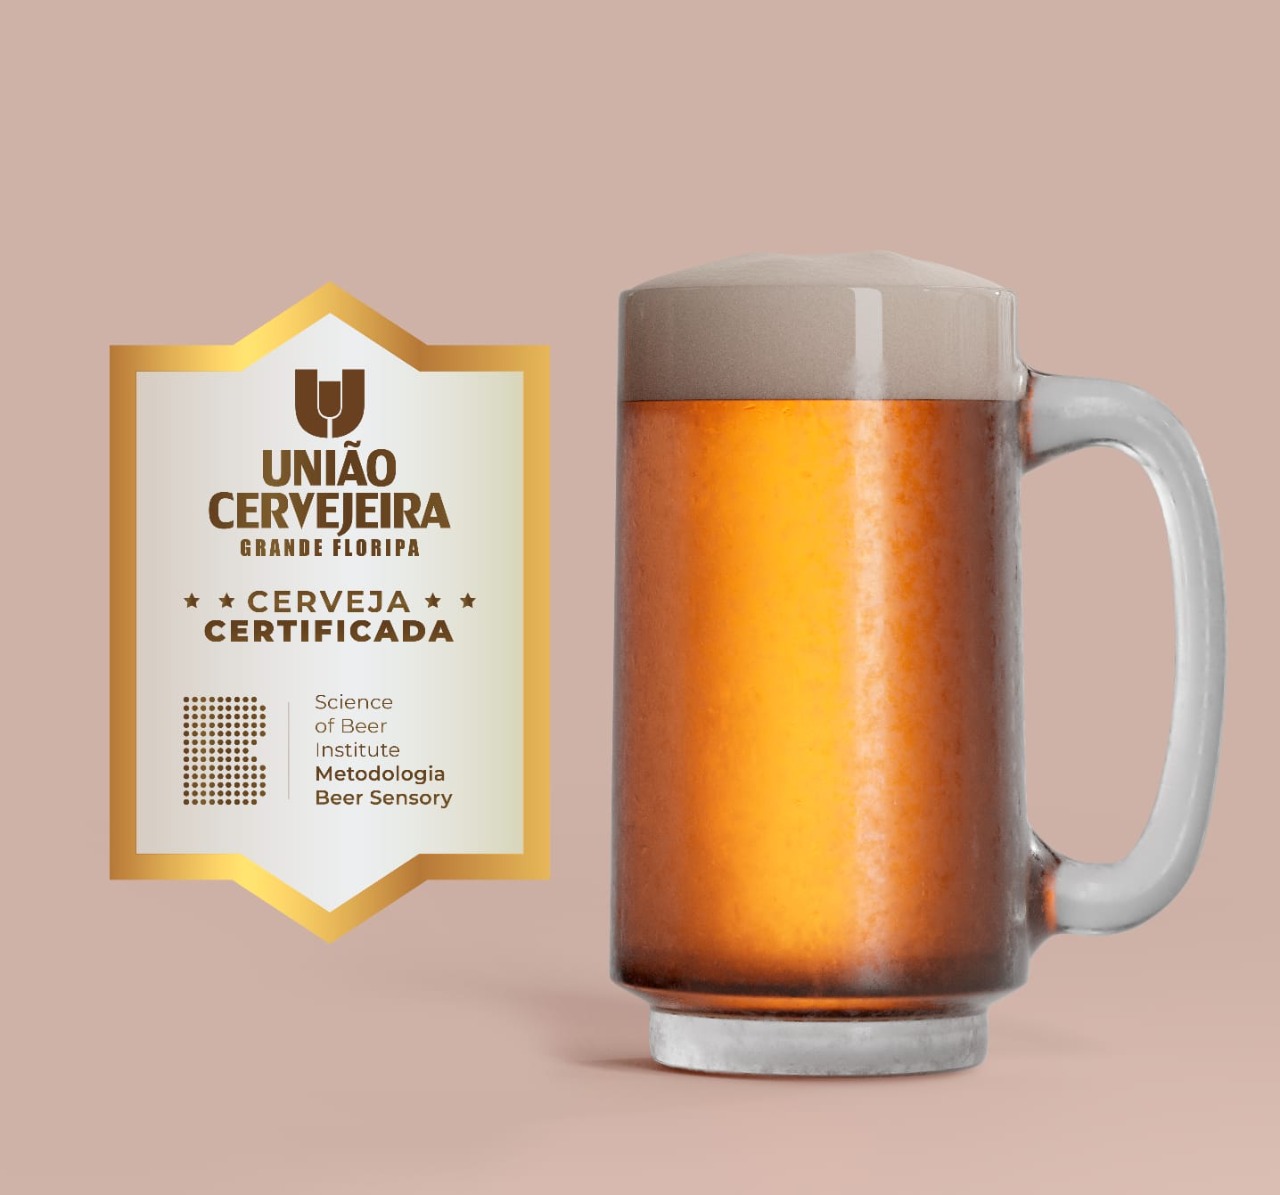 União Cervejeira cria selo de qualidade para mostrar excelência da produção local